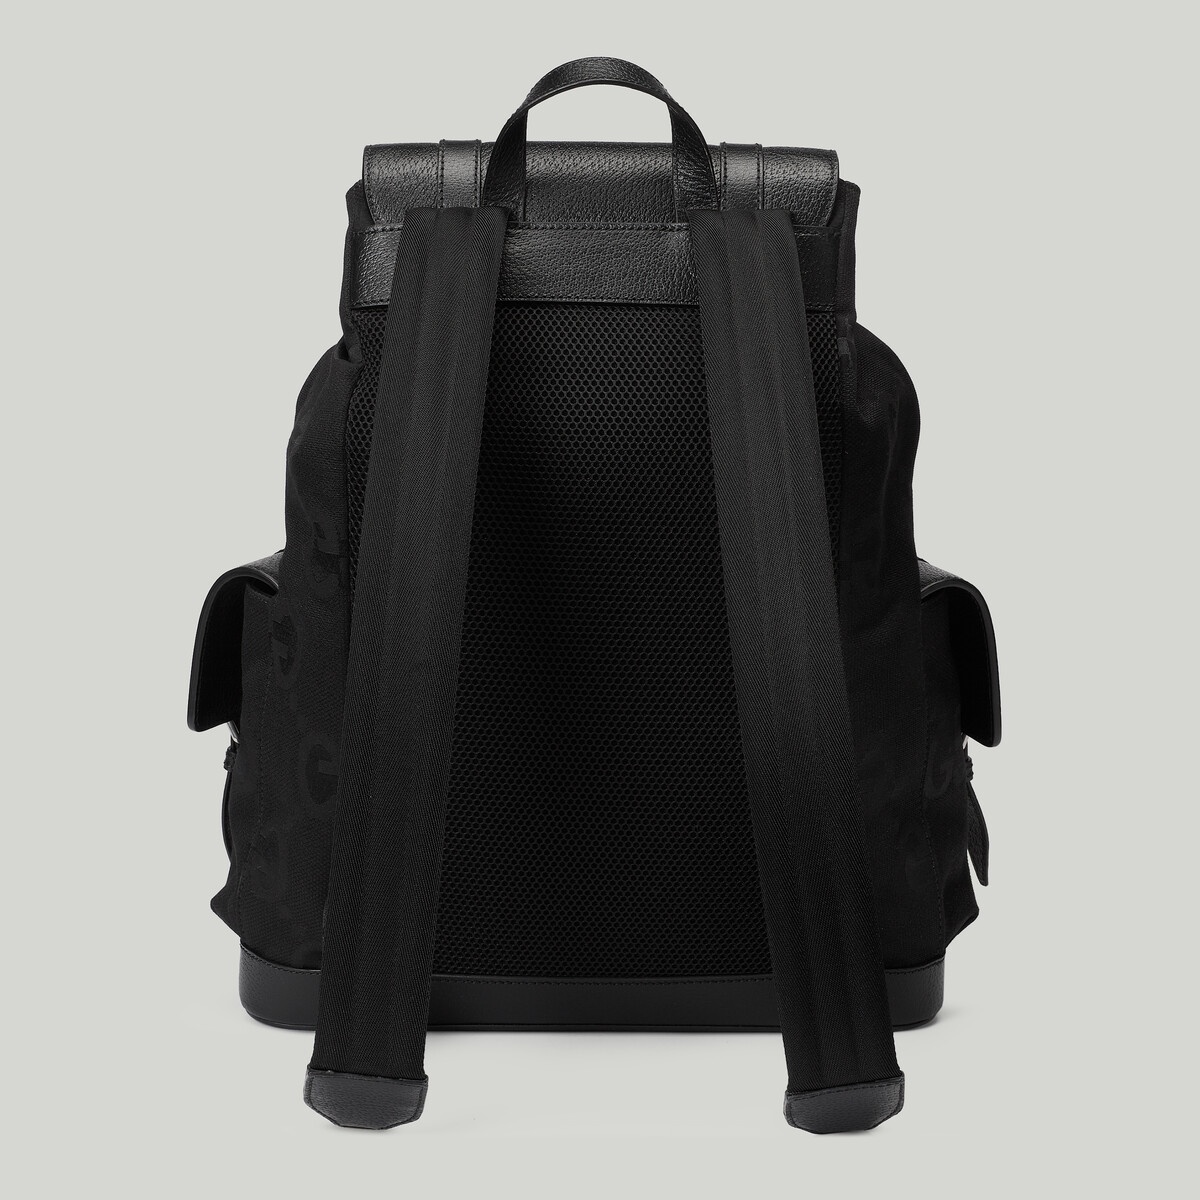 Jumbo GG backpack - 5